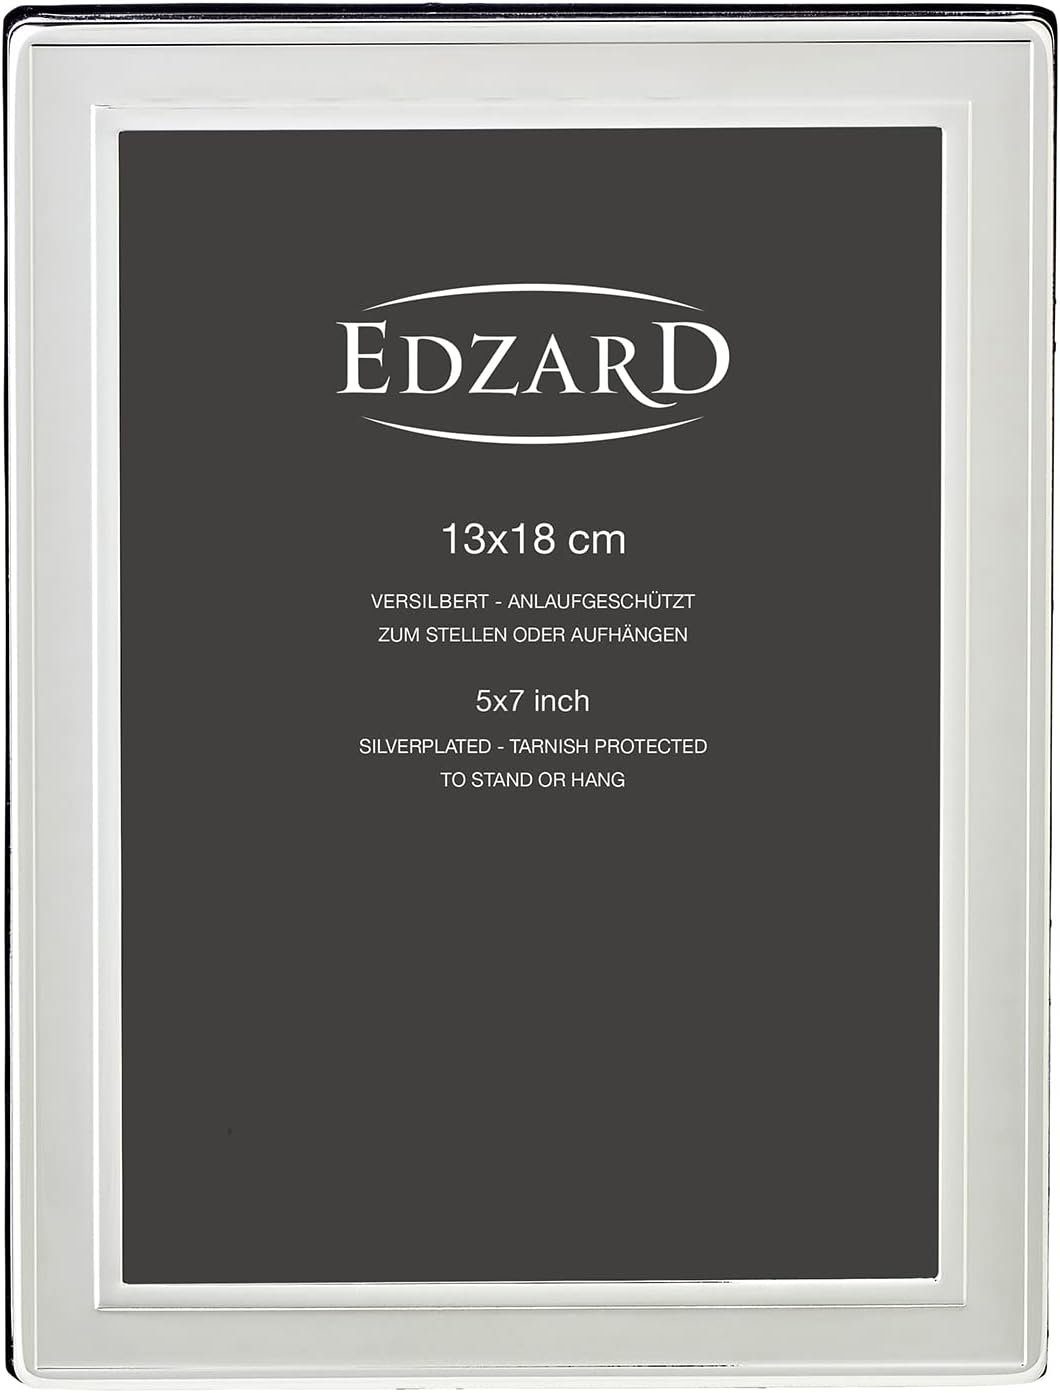 Foto EDZARD Bilderrahmen cm für versilbert und 13x18 Nardo, anlaufgeschützt, edel